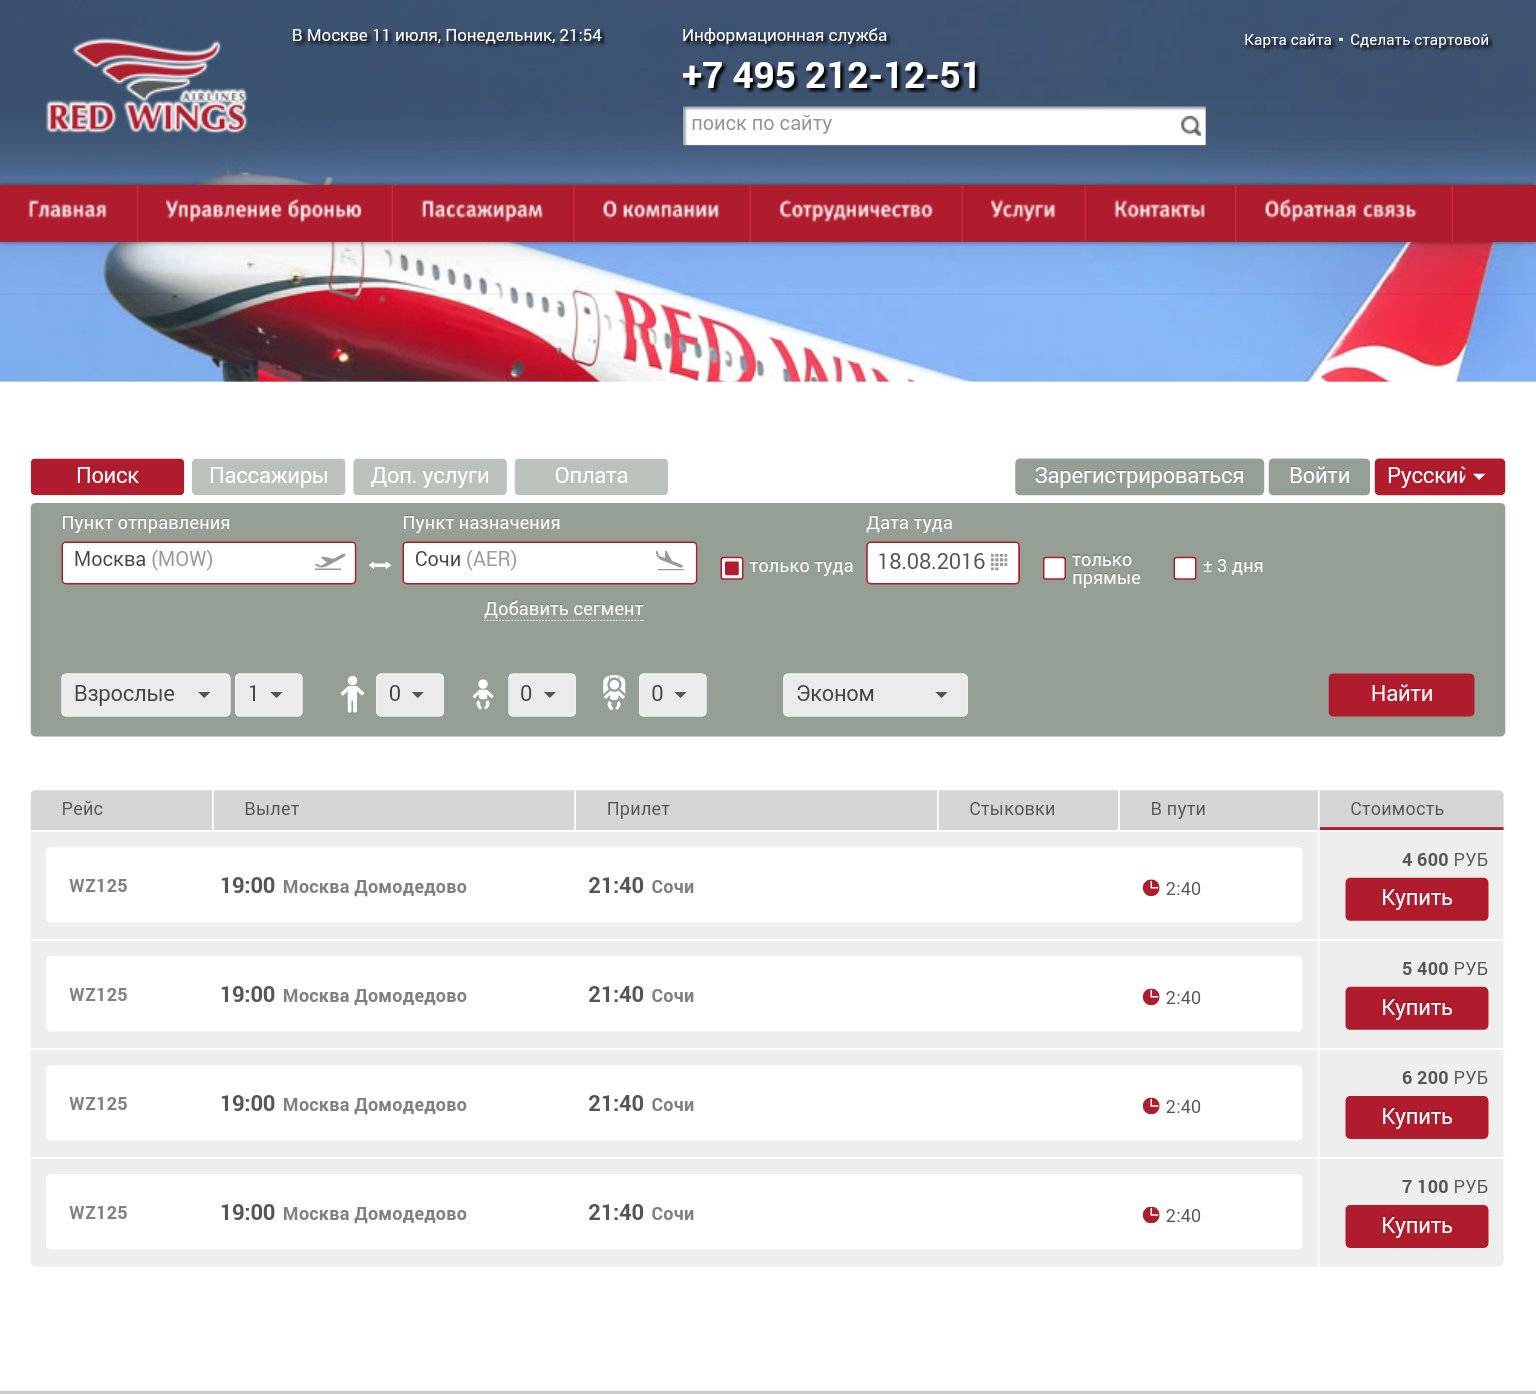 Рейсы ред вингс — как зарегистрироваться, где найти расписание - aviacompany.com